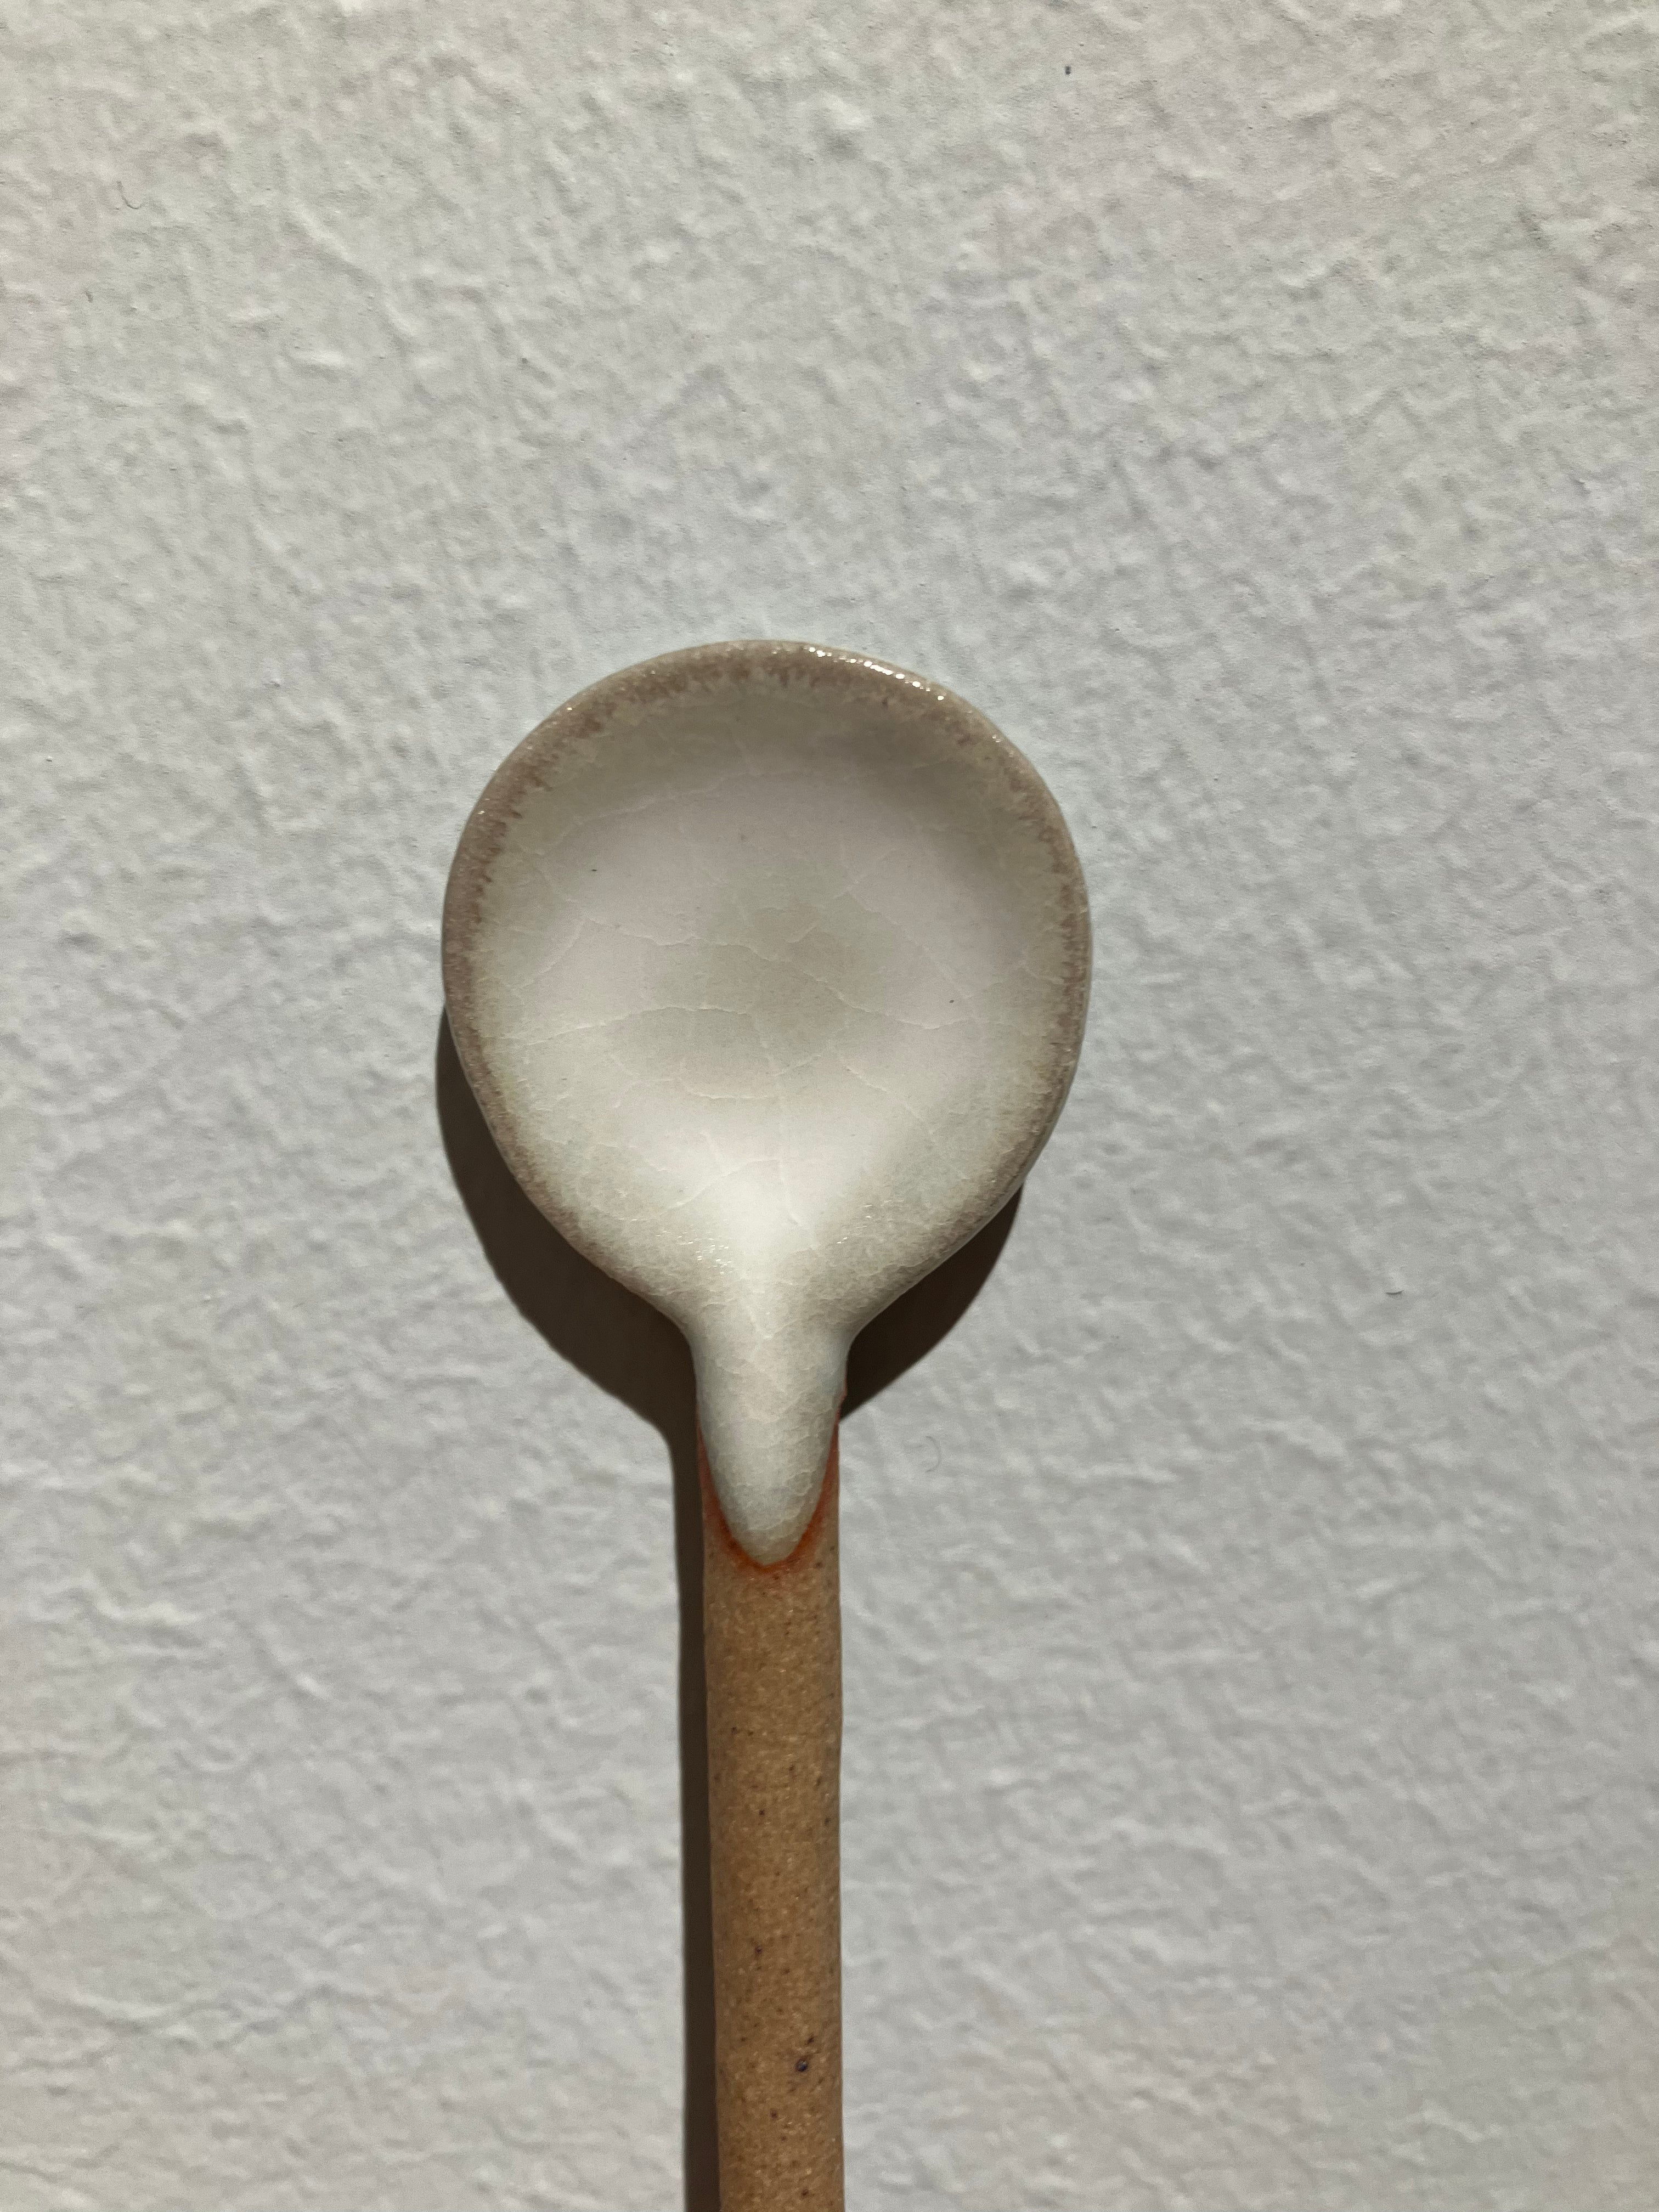 Ceramic spoon with white glaze